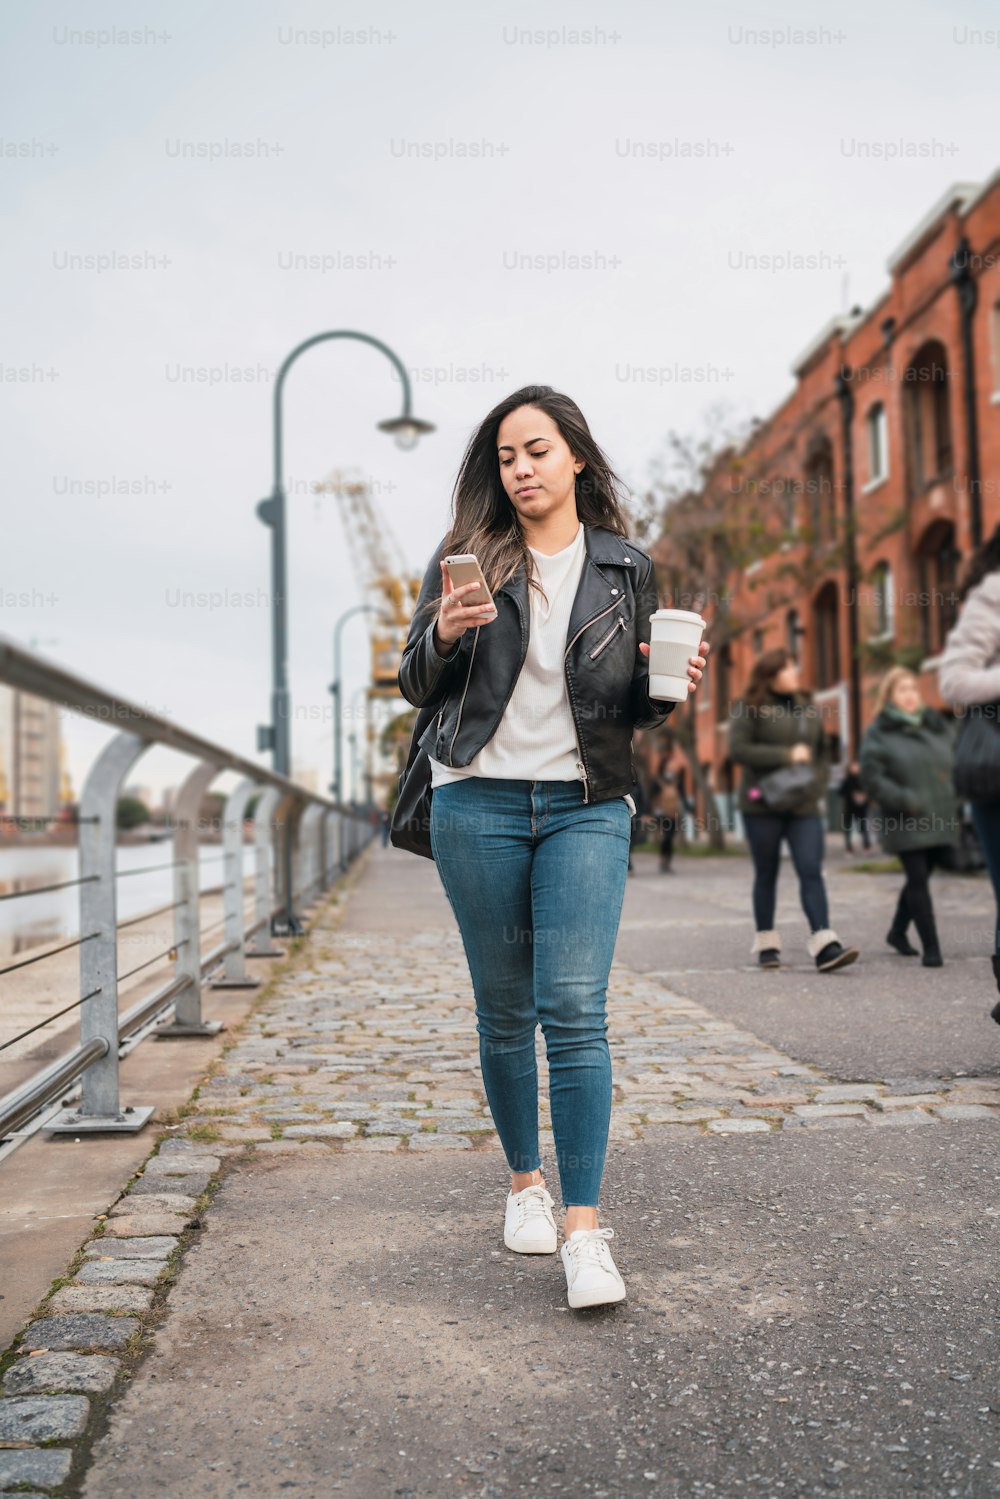 コーヒーを飲みながら歩きながら携帯電話を使う若い女性のポートレート。都市とコミュニケーションのコンセプト。